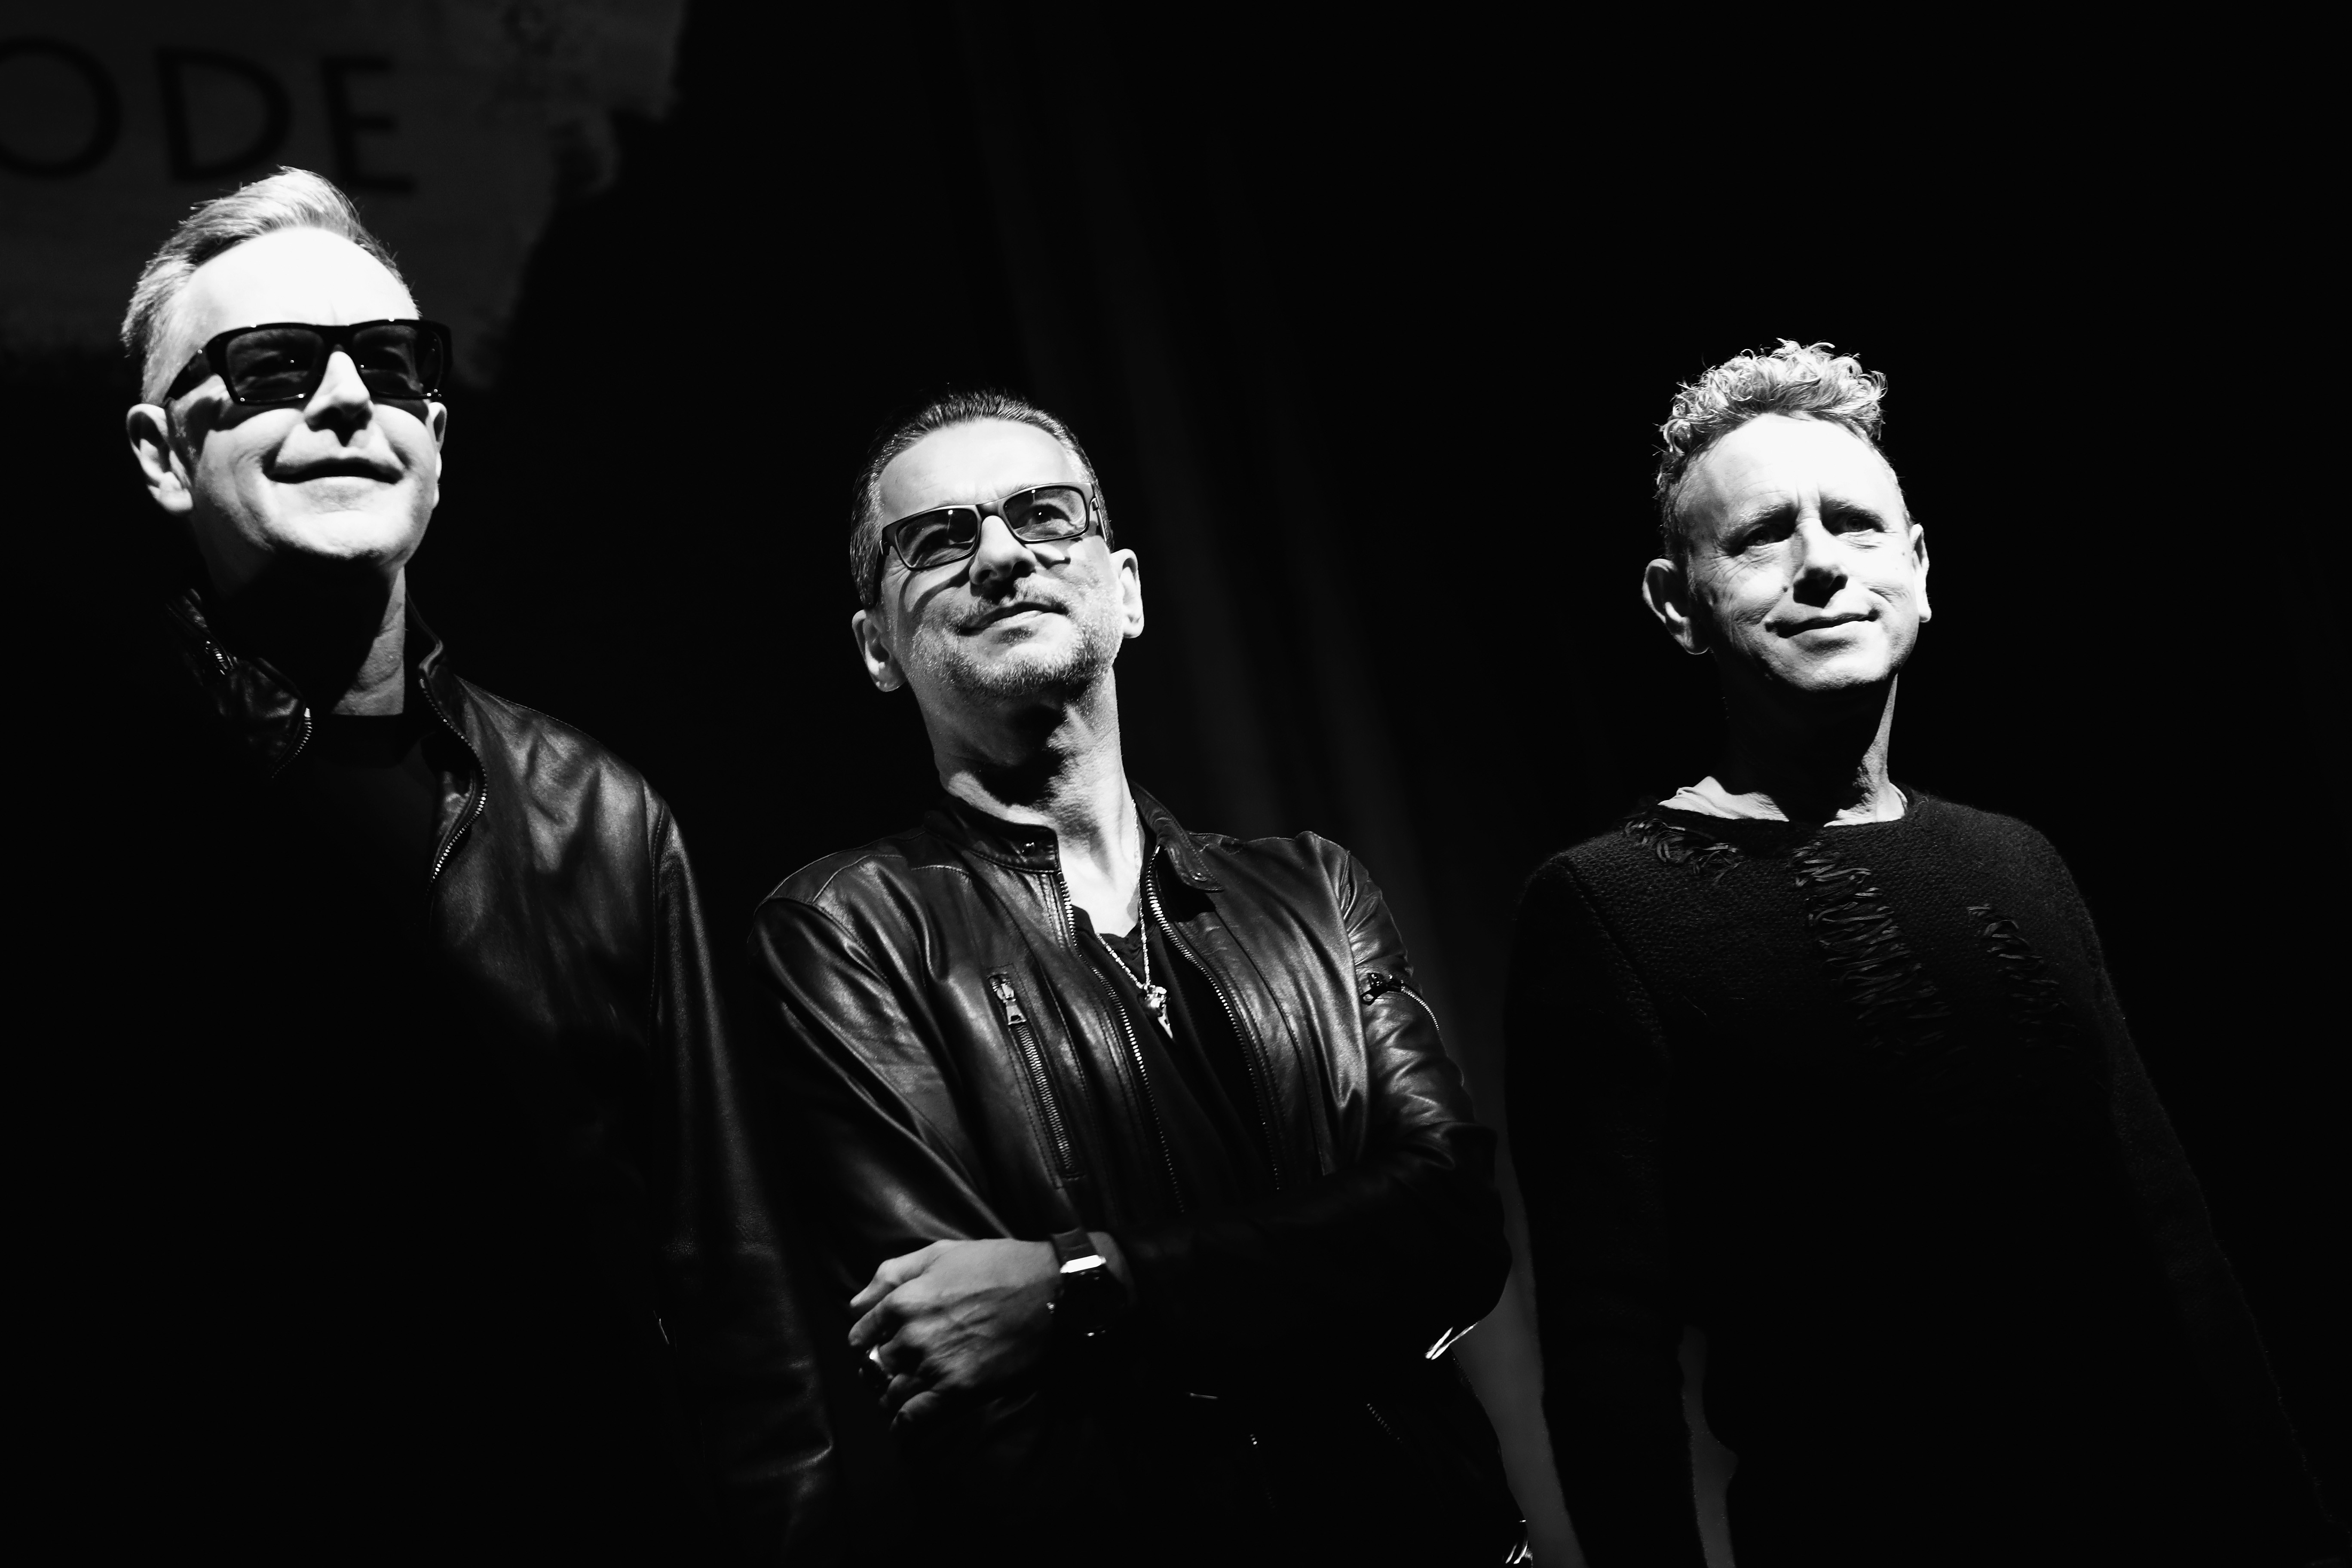 Show de retorno do Depeche Mode ao Brasil ganha local e data GQ Música